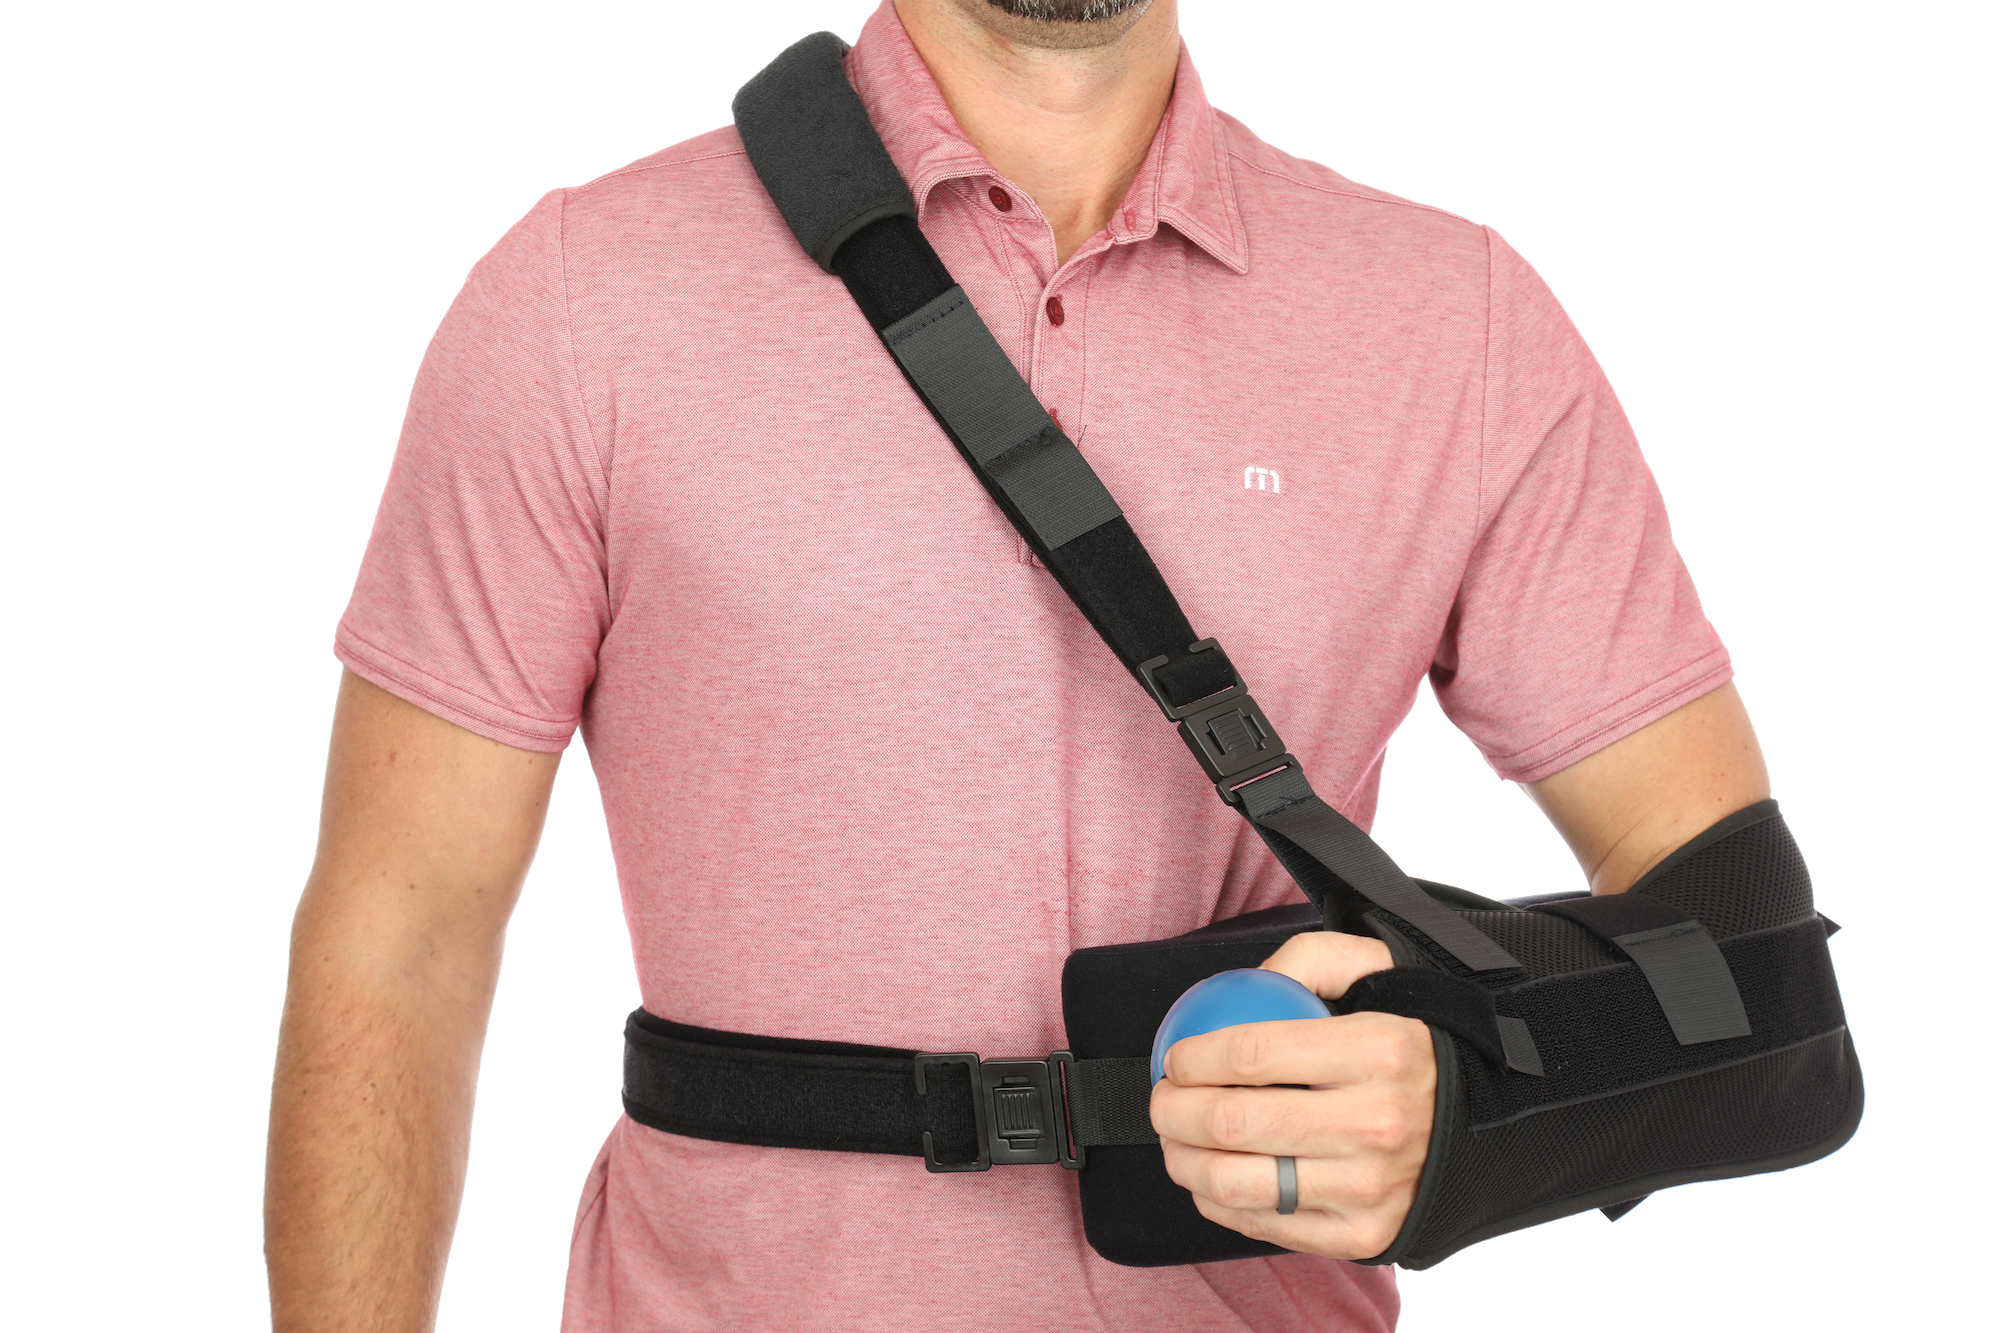 Battle Sports Lockdown 6 Sling Bag 2.0 - Single Shoulder Adjustable Strap,  Padded Sleeve for up to 15” Laptop, Crossbody Bag